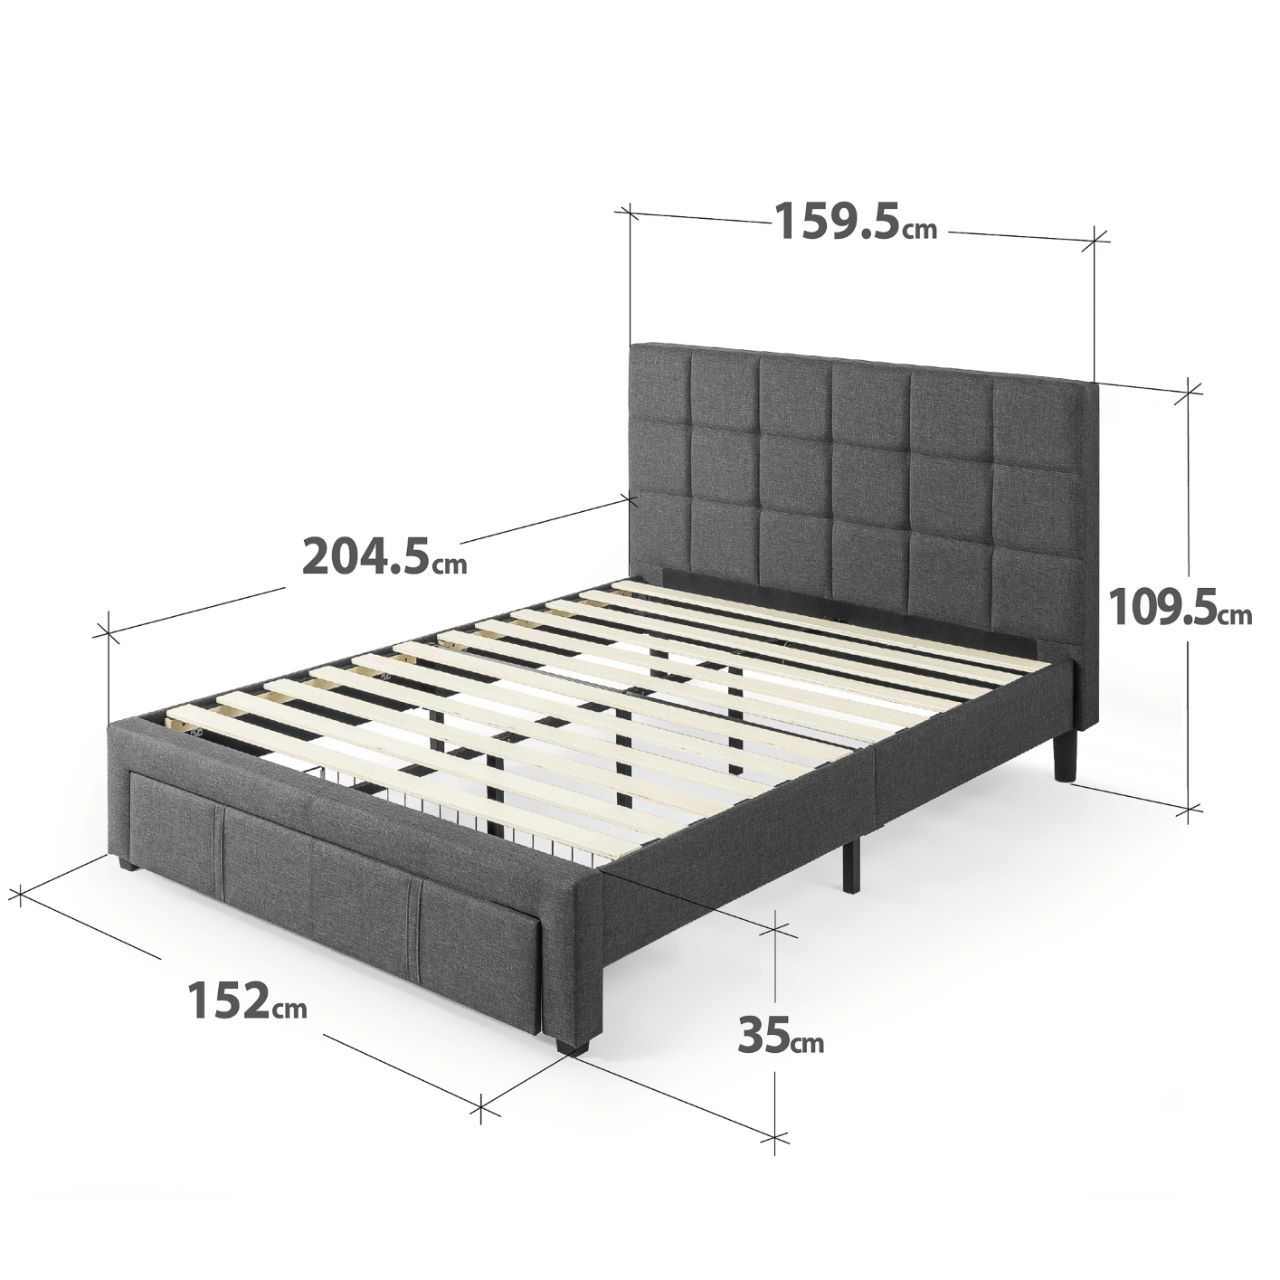 Kích thước giường ngủ đơn hiện đại 1m6 x 2m